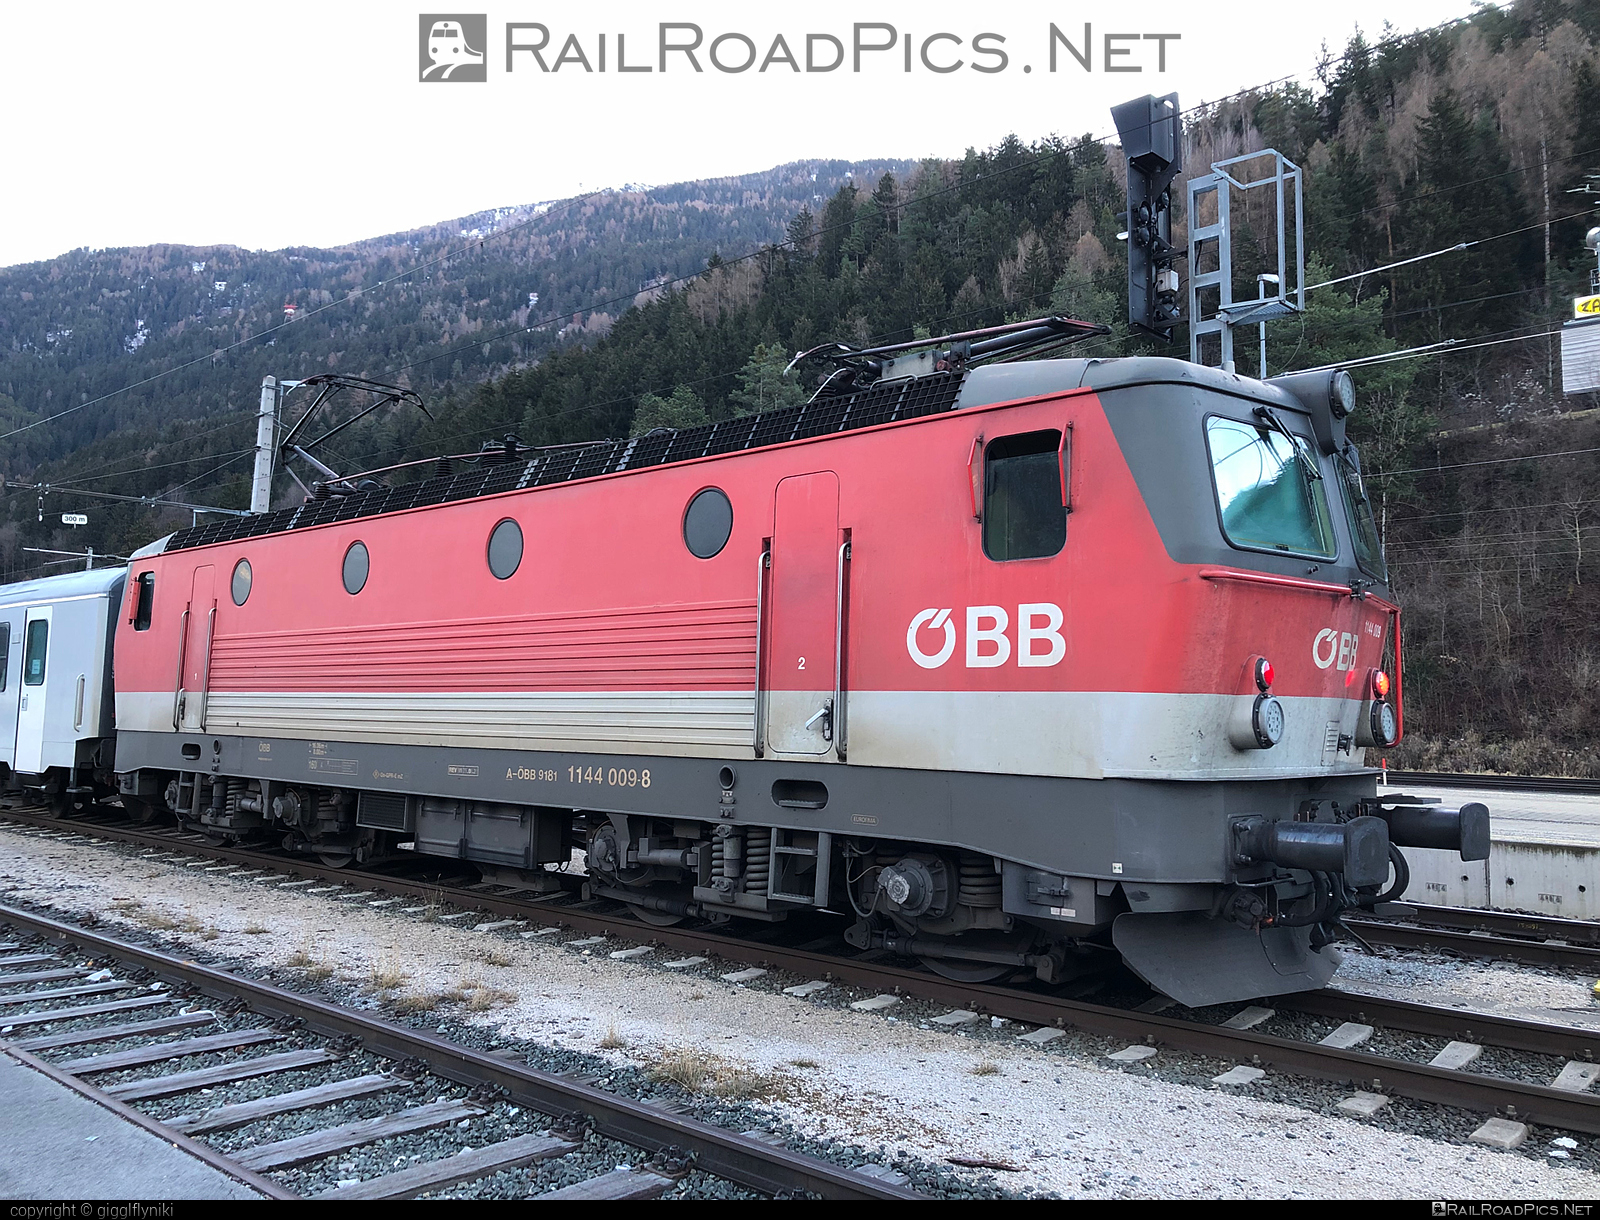 SGP 1144 - 1144 009 operated by Österreichische Bundesbahnen #obb #obb1144 #obbClass1144 #osterreichischebundesbahnen #sgp #sgp1144 #simmeringgrazpauker